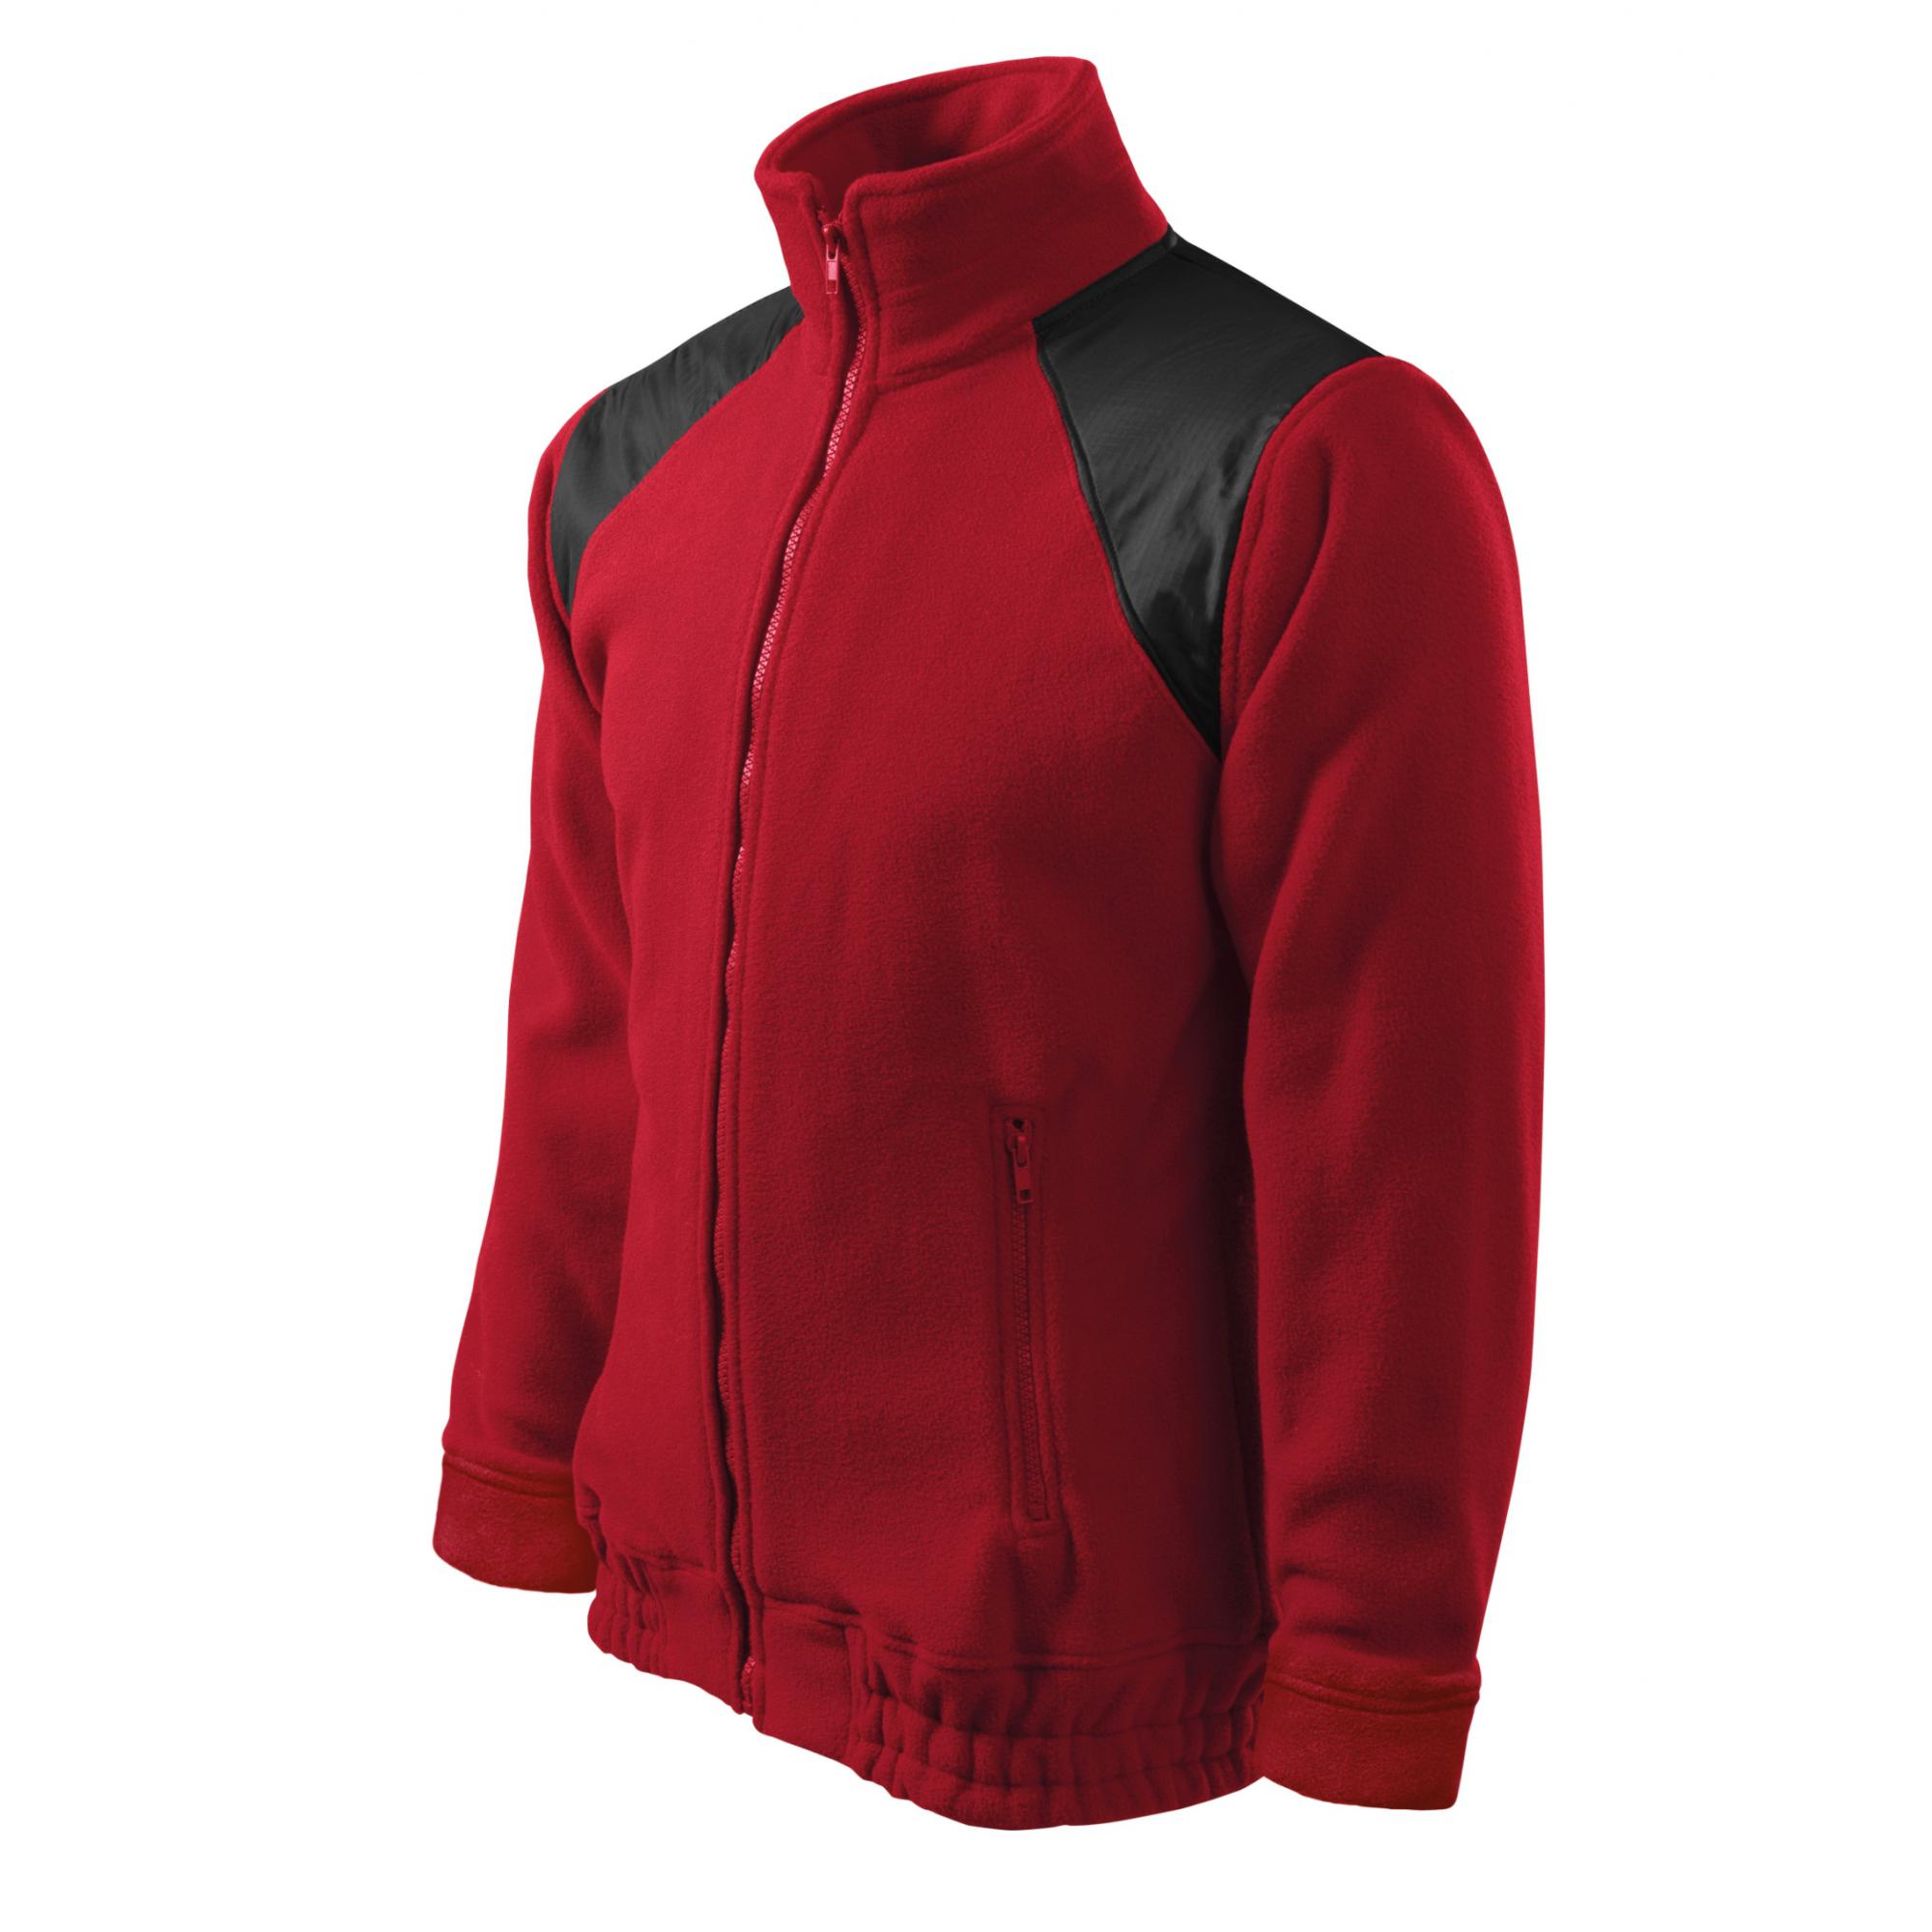 Jachetă fleece unisex Jacket Hi-Q 506 Rosu marlboro XL